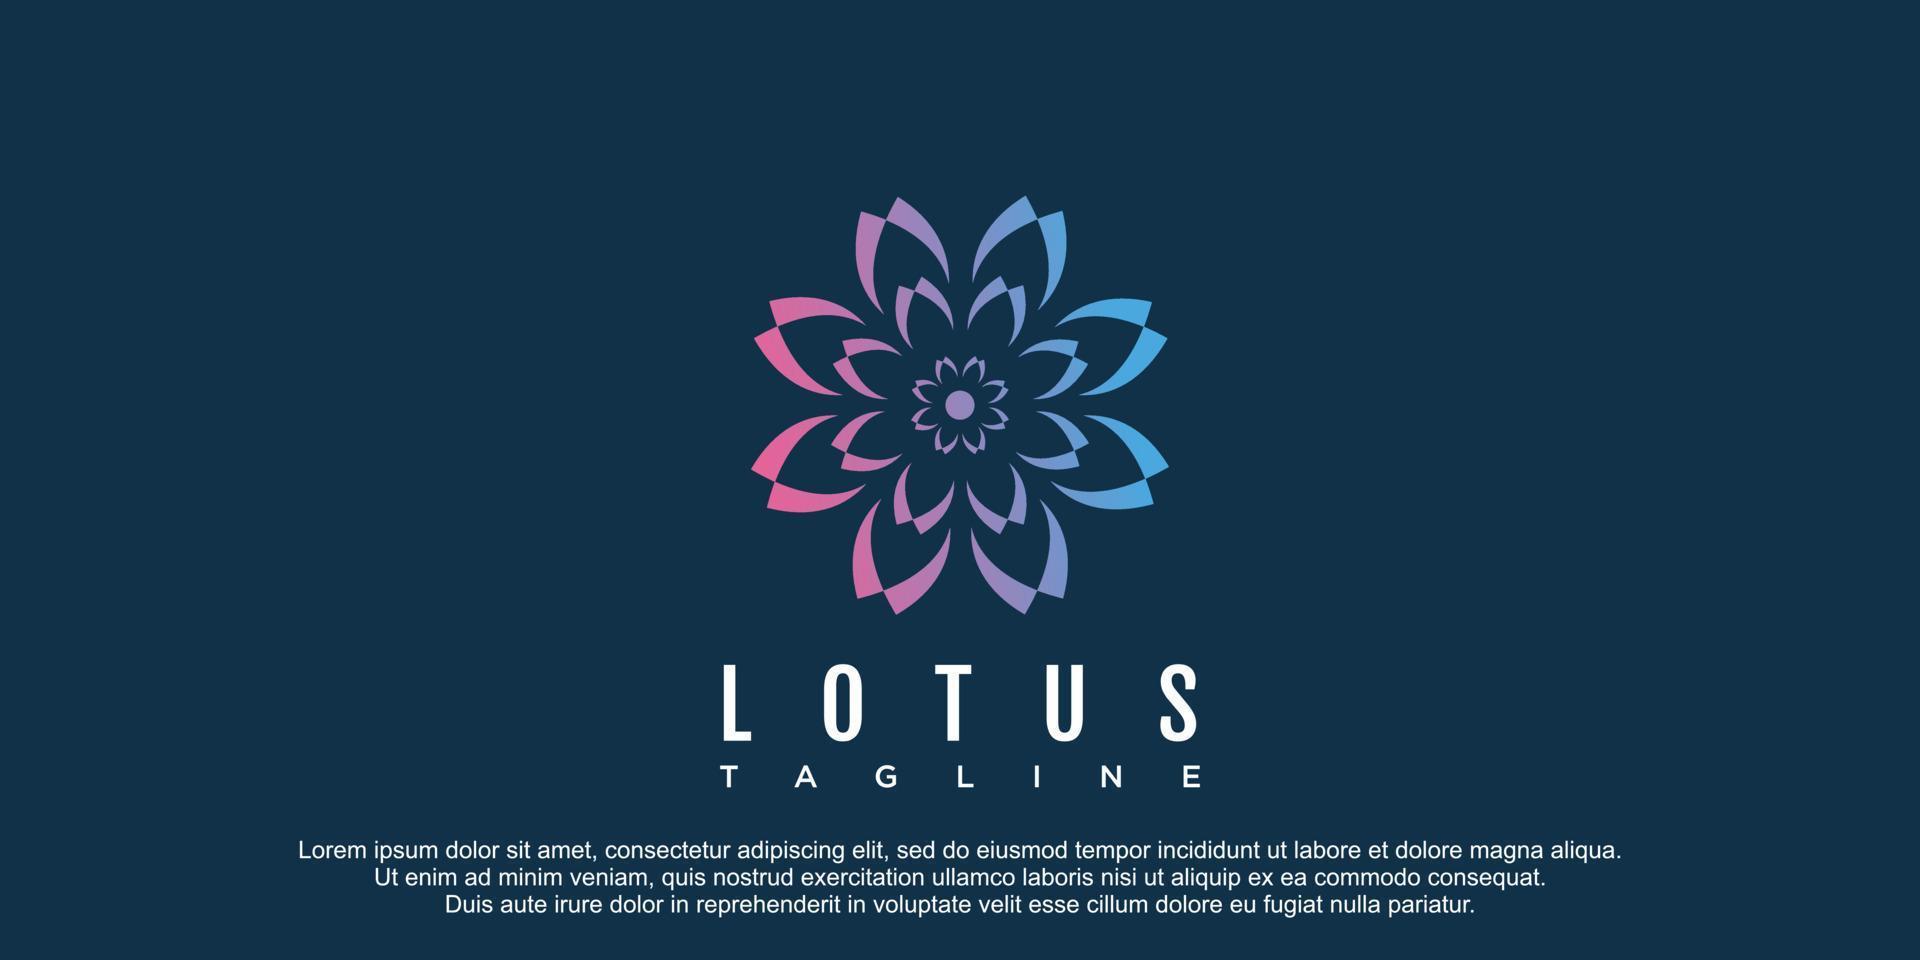 Lotus logo with creative design premium vector